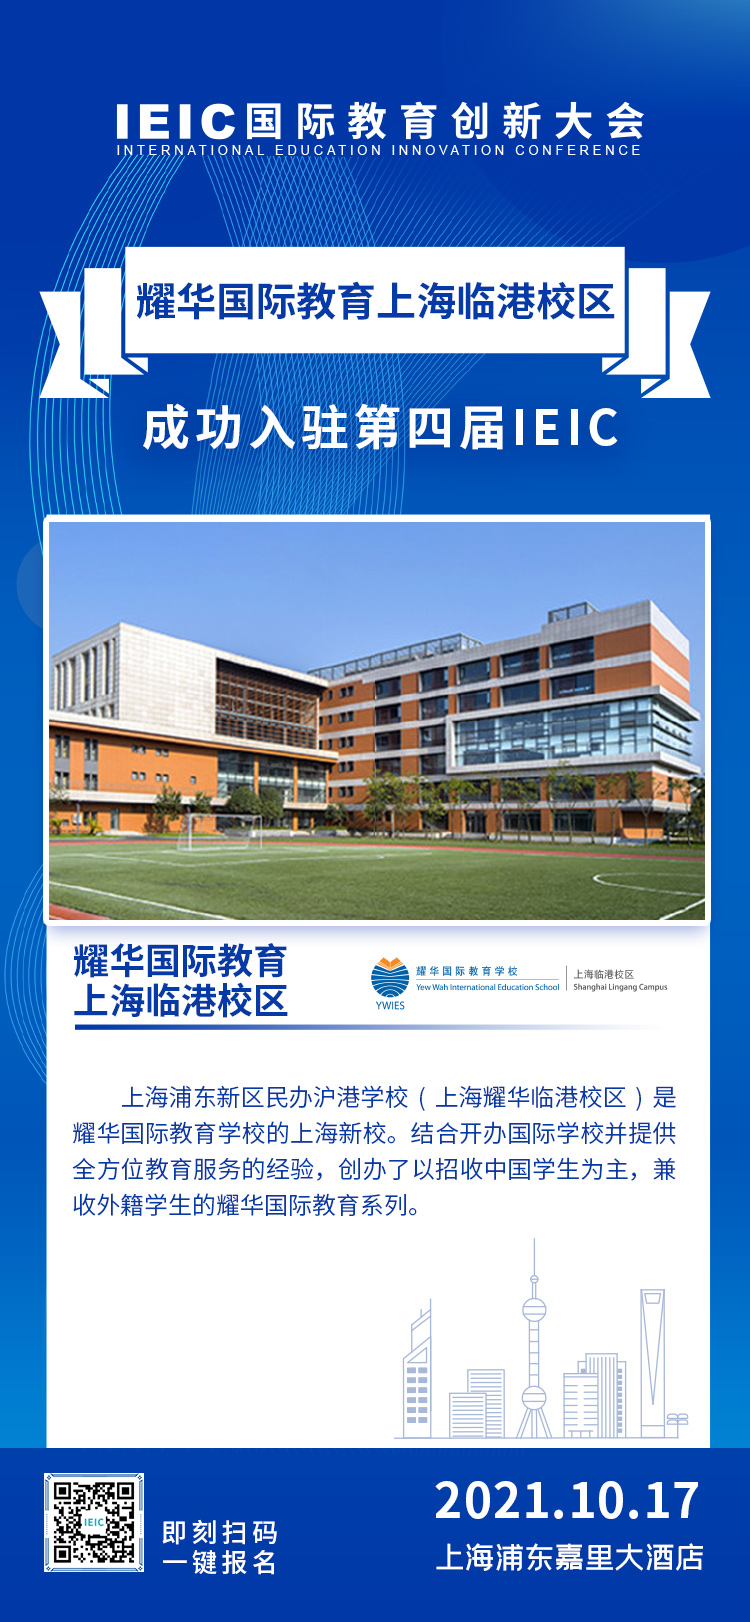 上海耀华临港校区|入驻参展2021年远播第四届IEIC国际教育创新大会